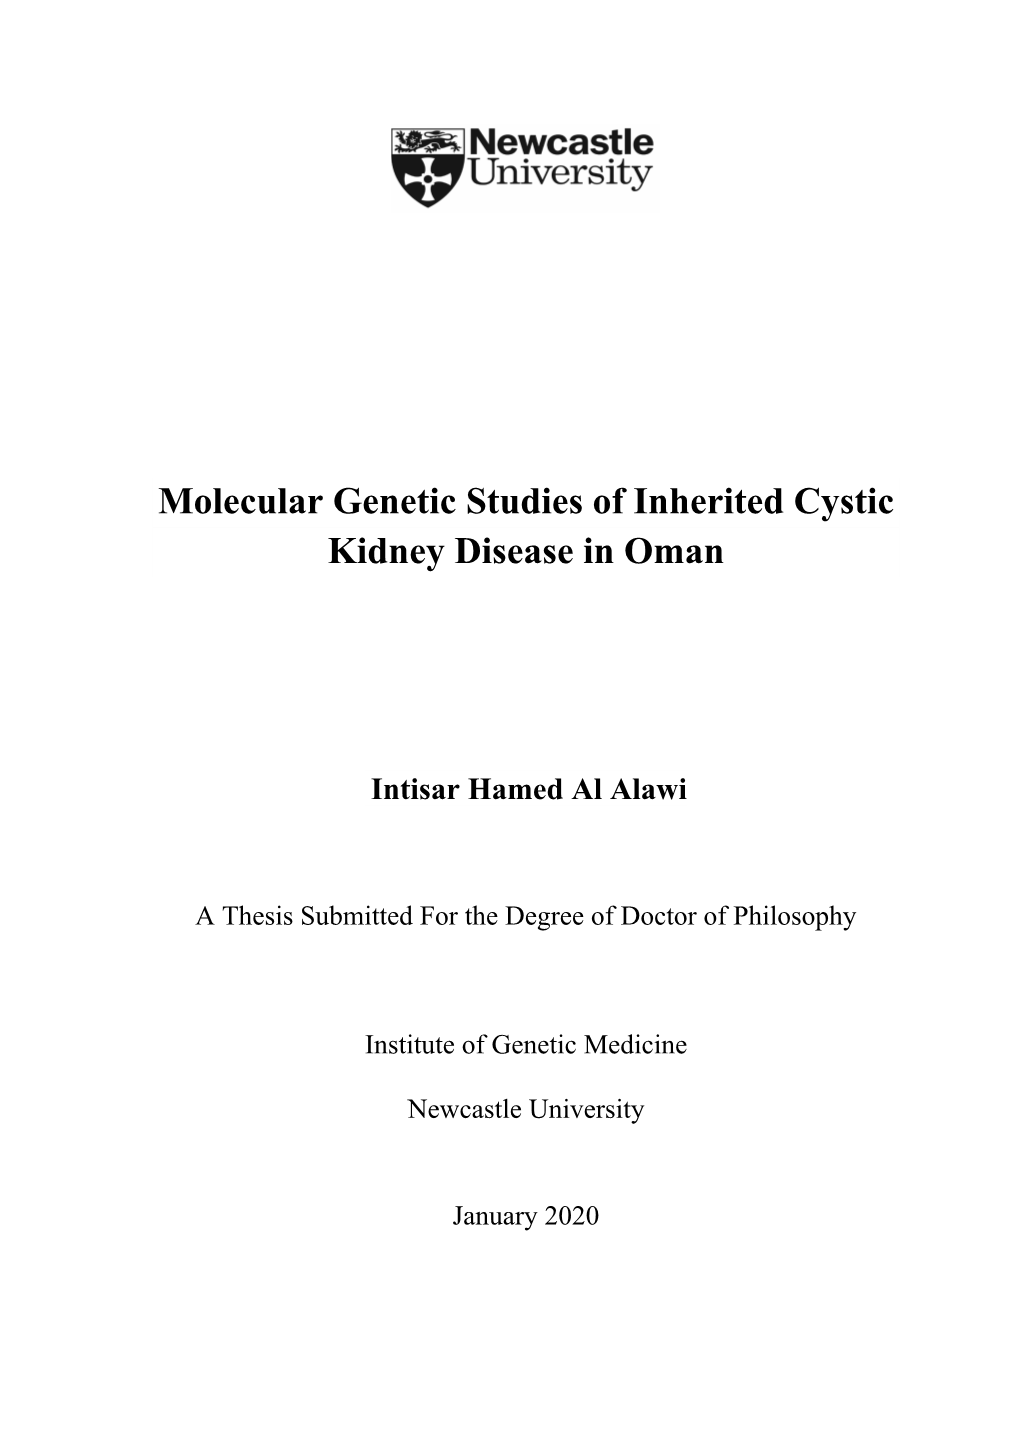 Molecular Genetic Studies of Inherited Cystic Kidney Disease in Oman